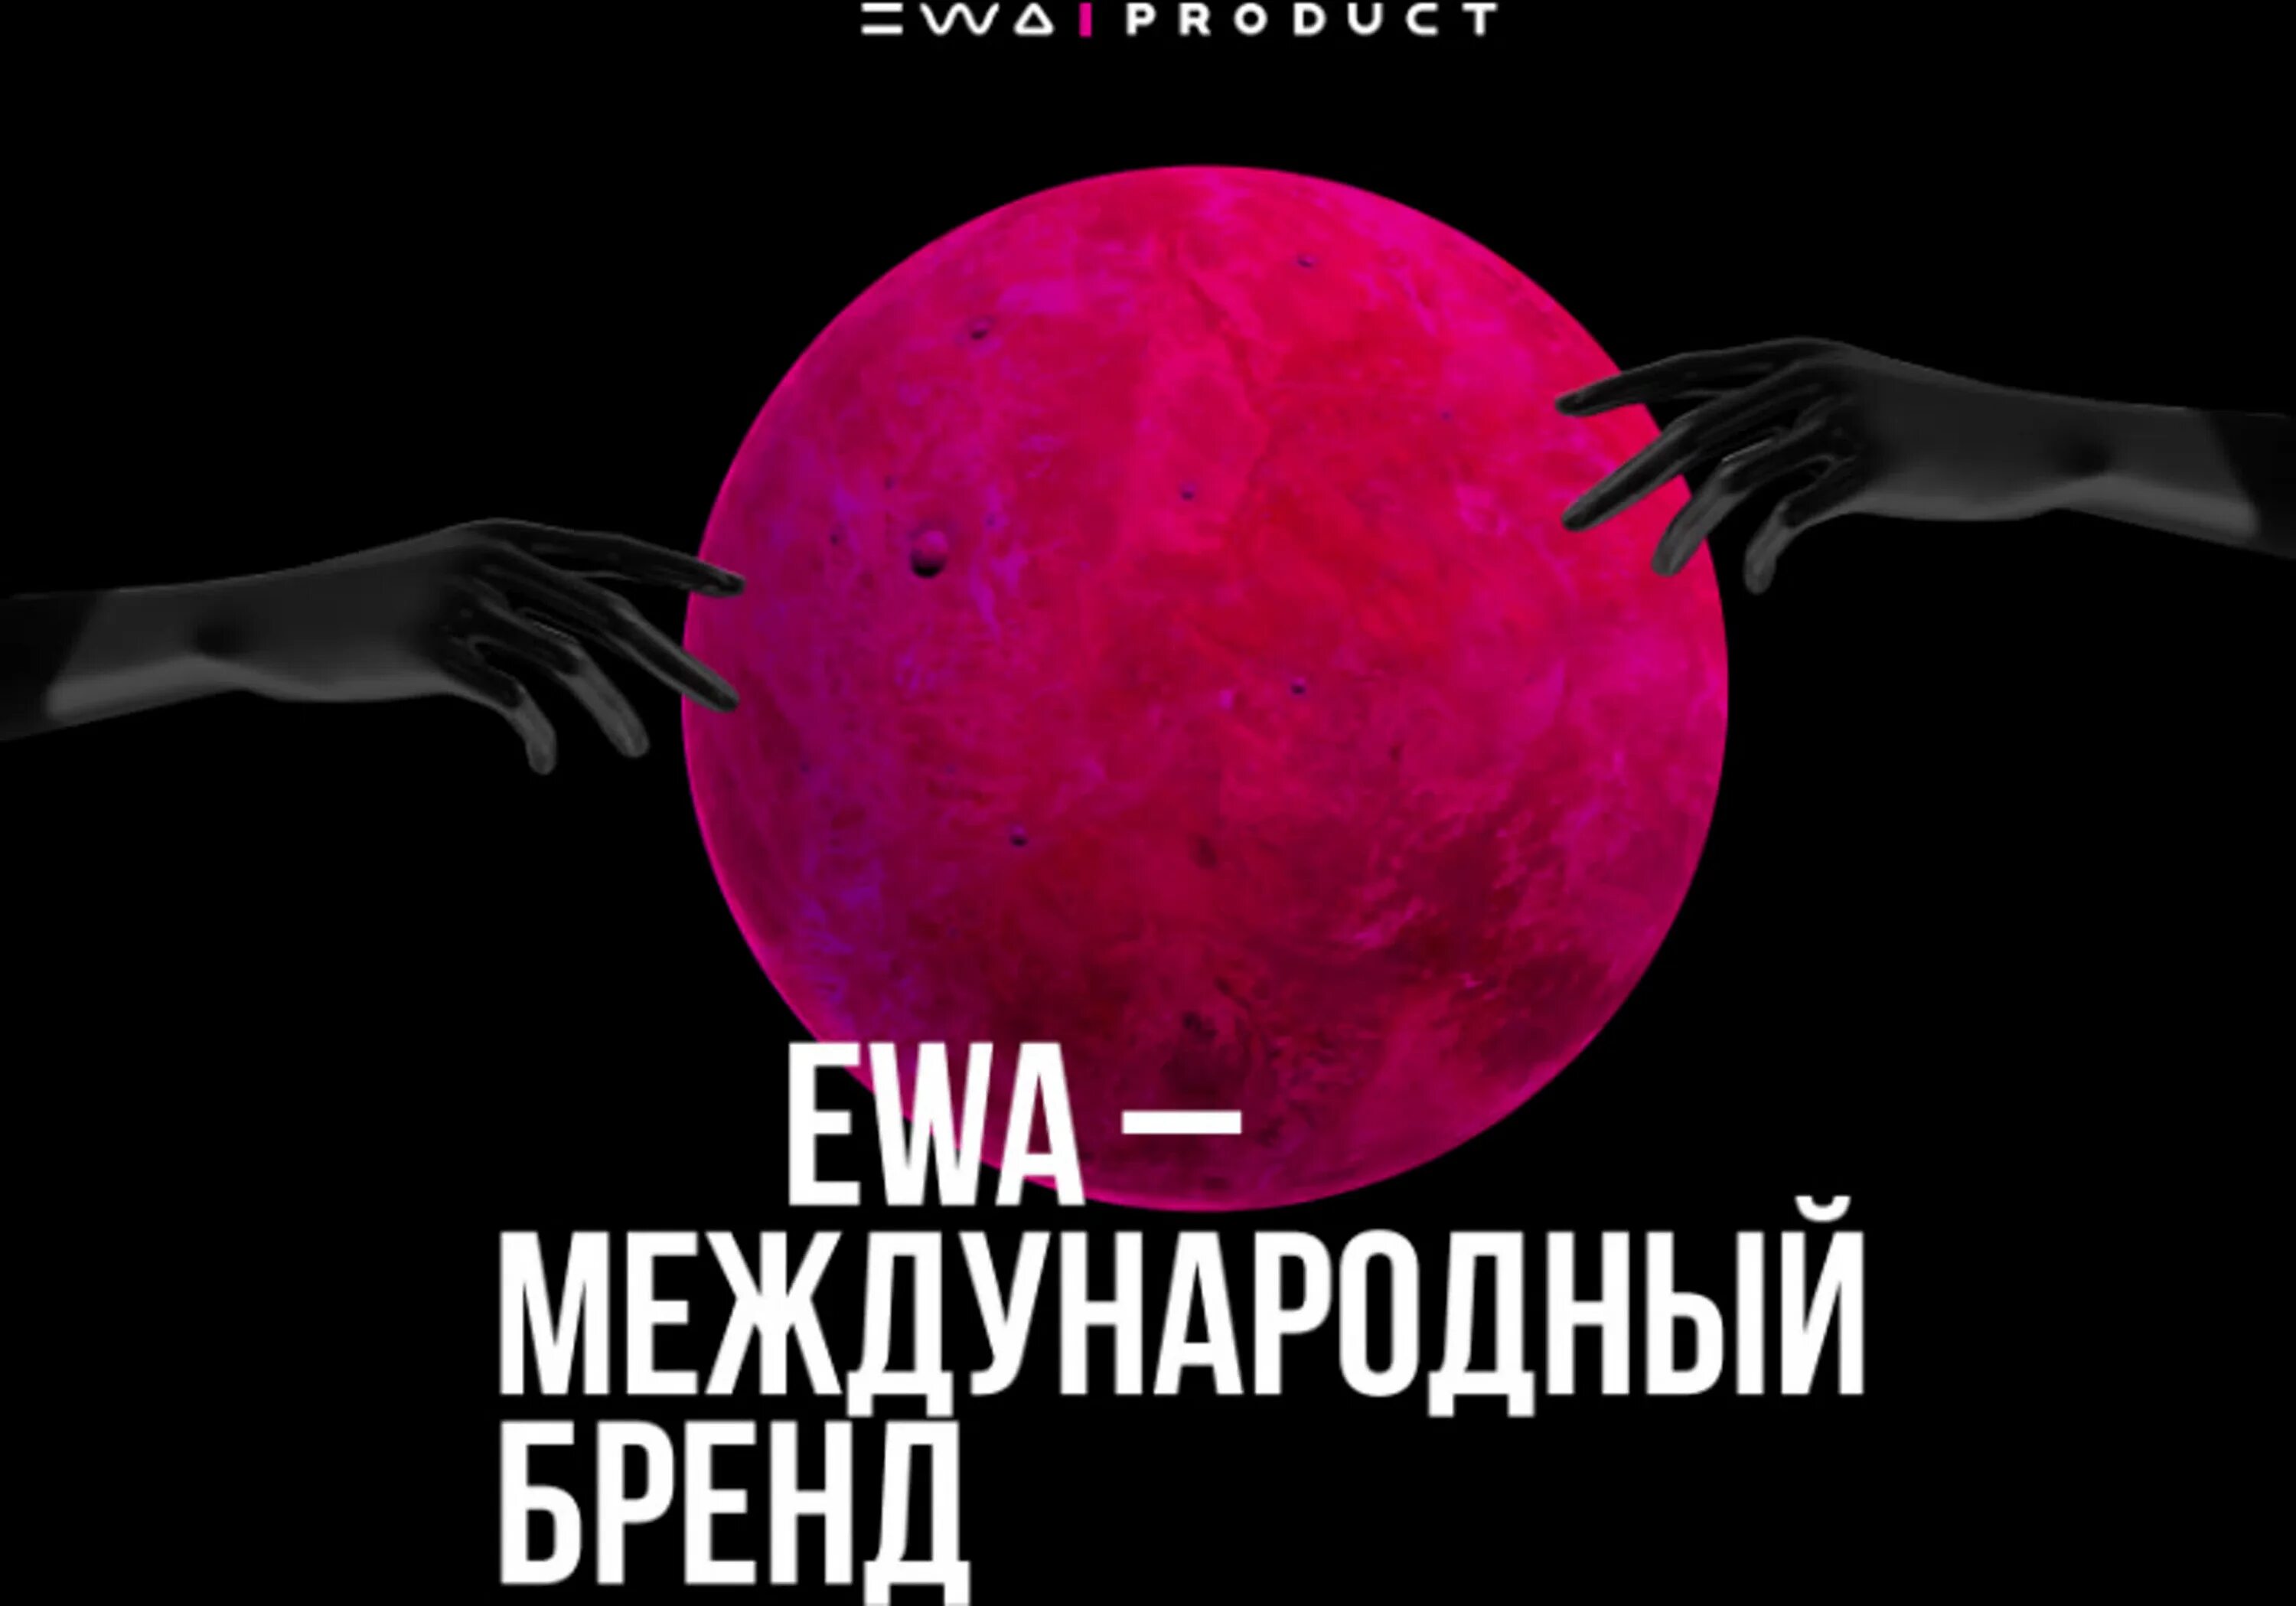 Ewa product. Ewa продукт компания. Ewa product сетевая компания. Компания Ewa product логотип.